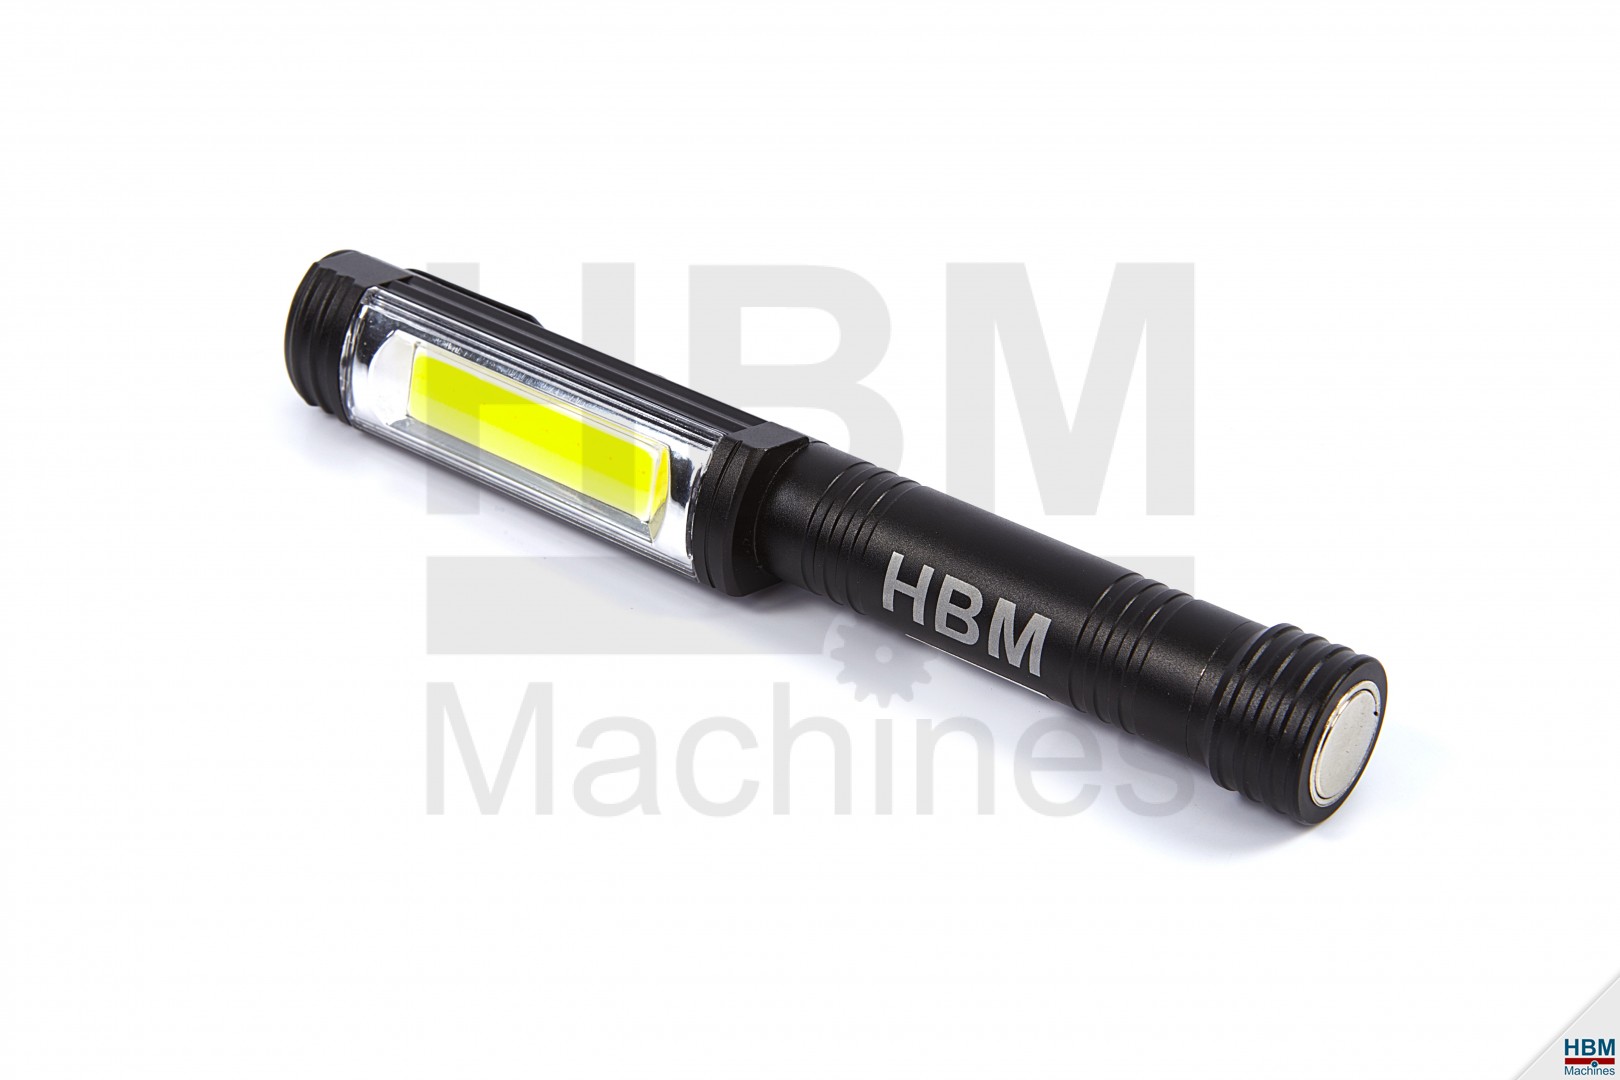 HBM Professionele LED Aluminium Mini met Magneetvoet 400